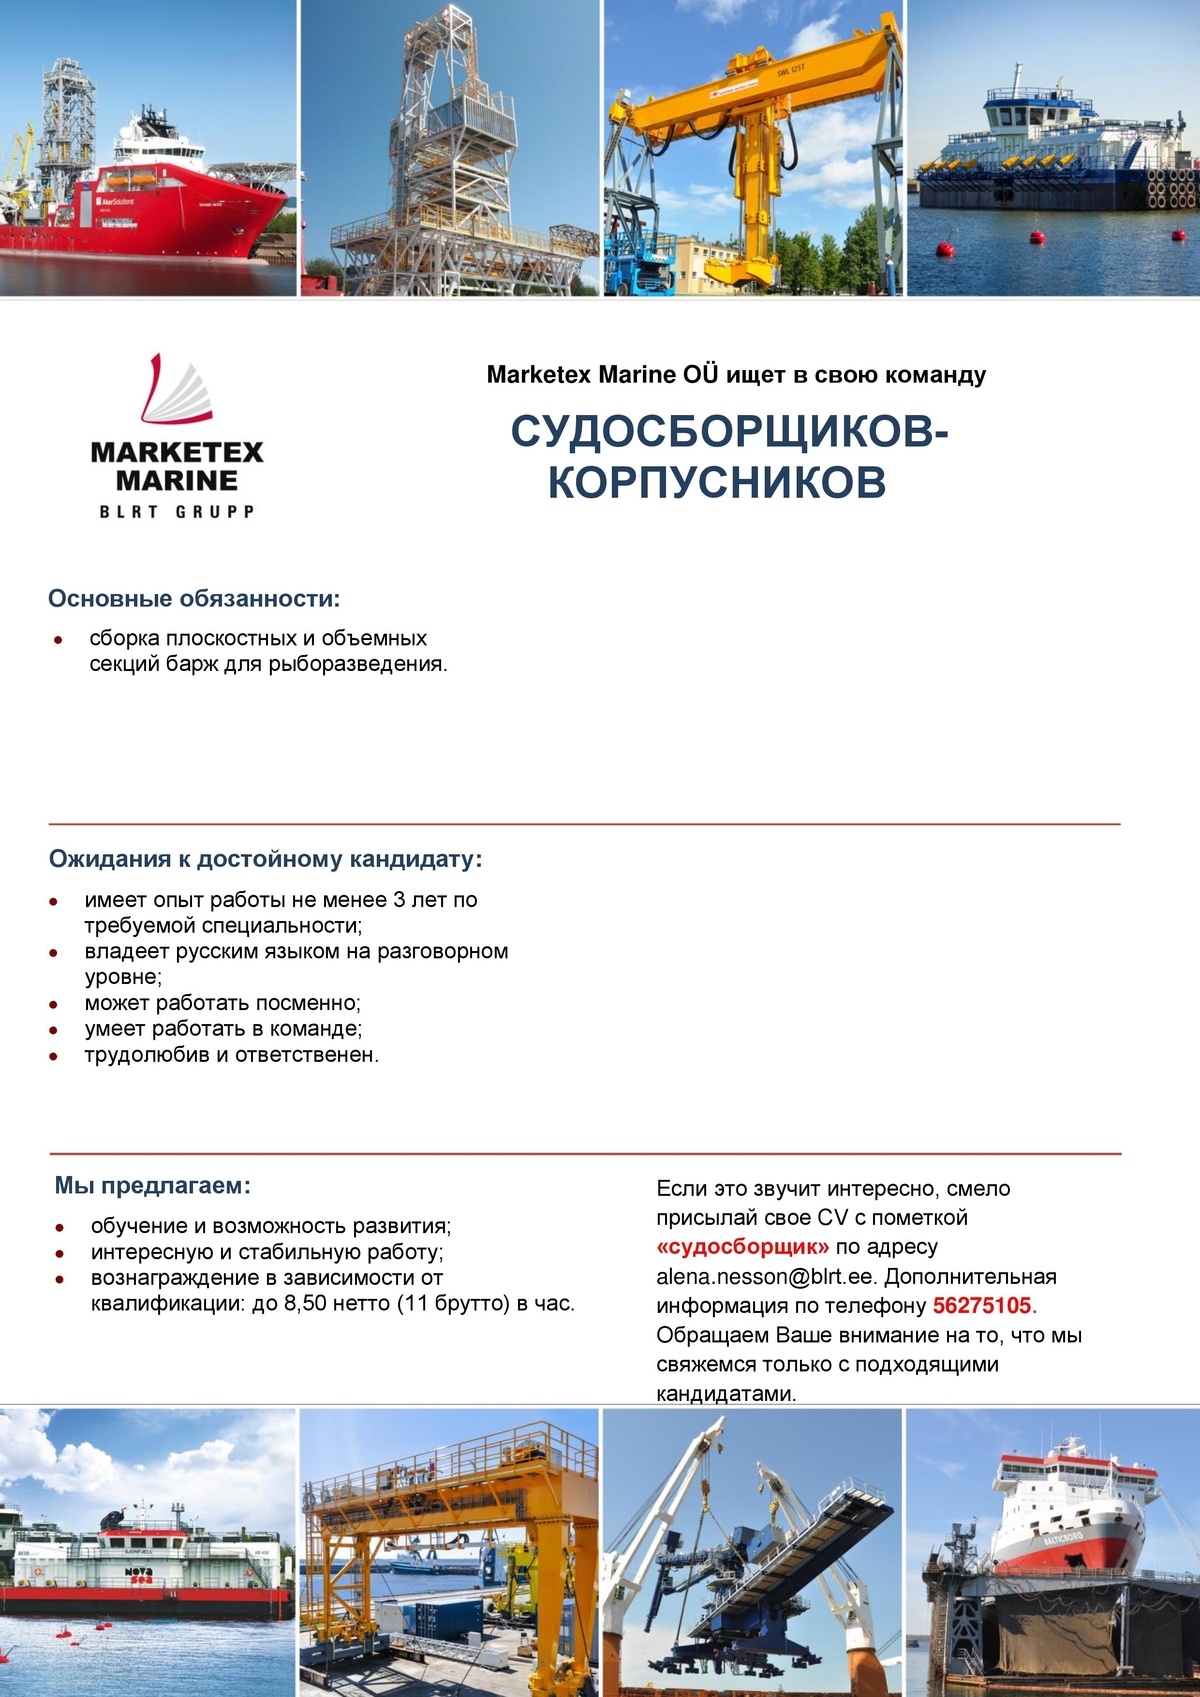 Marketex Marine OÜ Судосборщик-корпусник